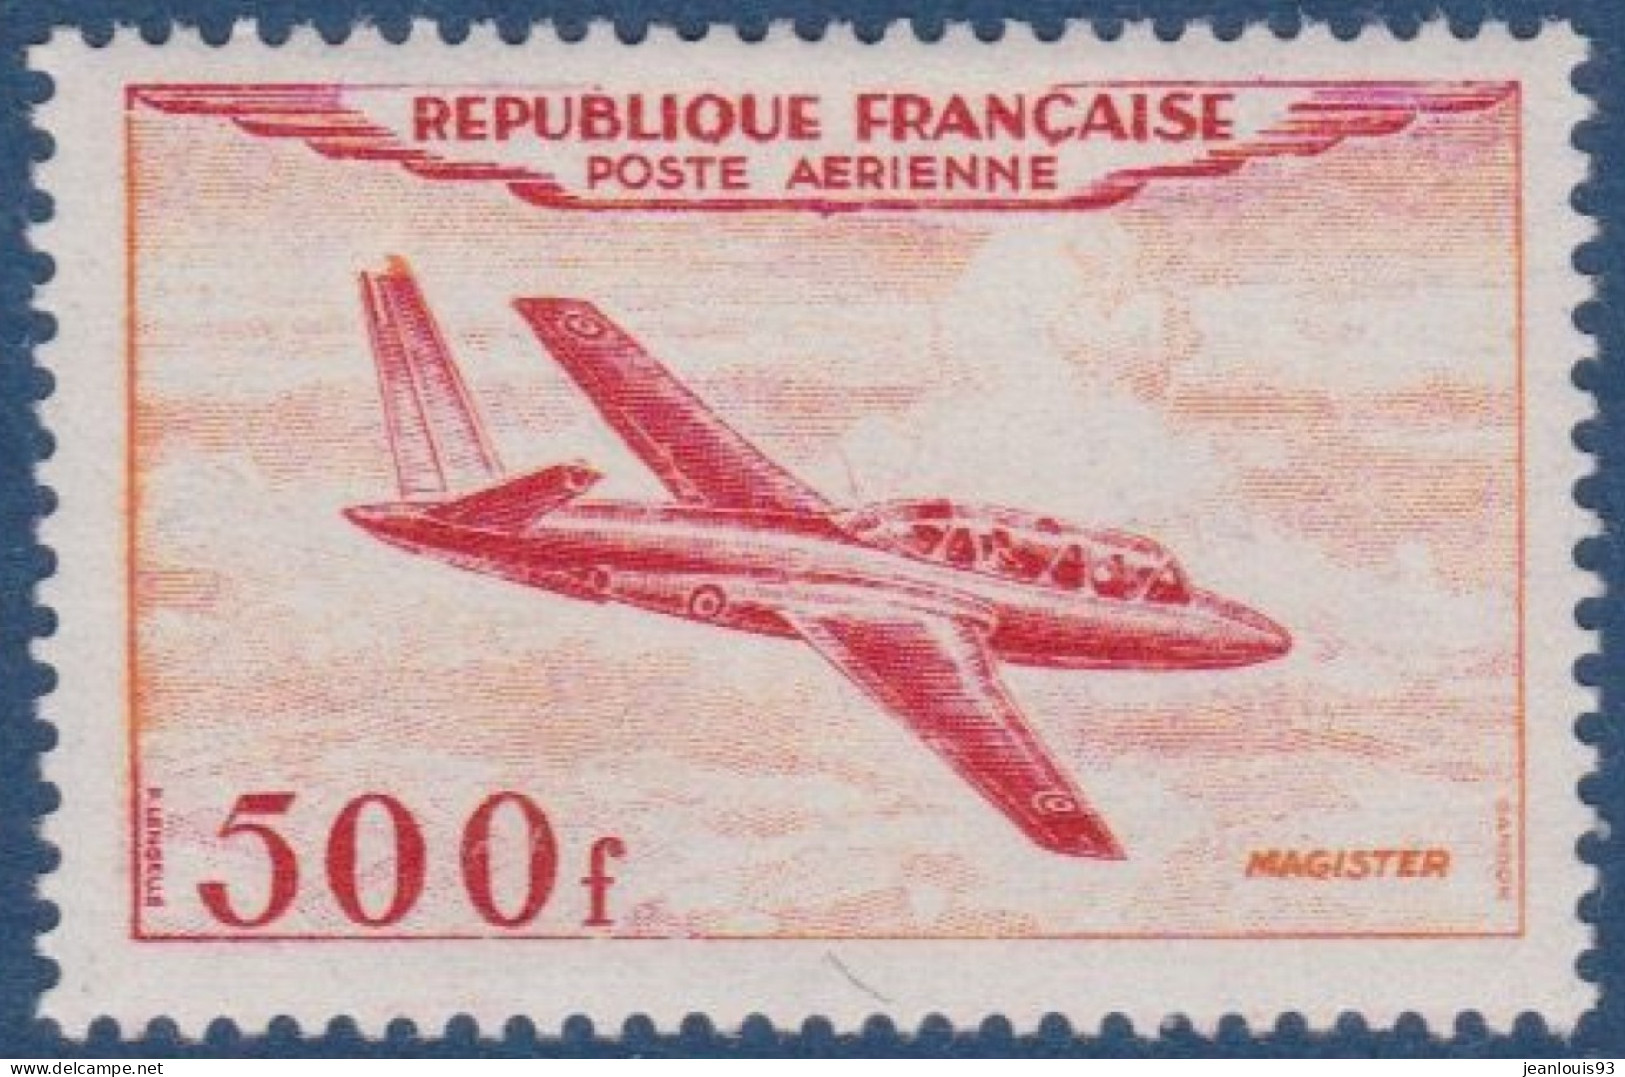 FRANCE - PA 32  FOUGA 500F NEUF AVEC CHARNIERE PROPRE COTE 110 EUR - 1927-1959 Postfris